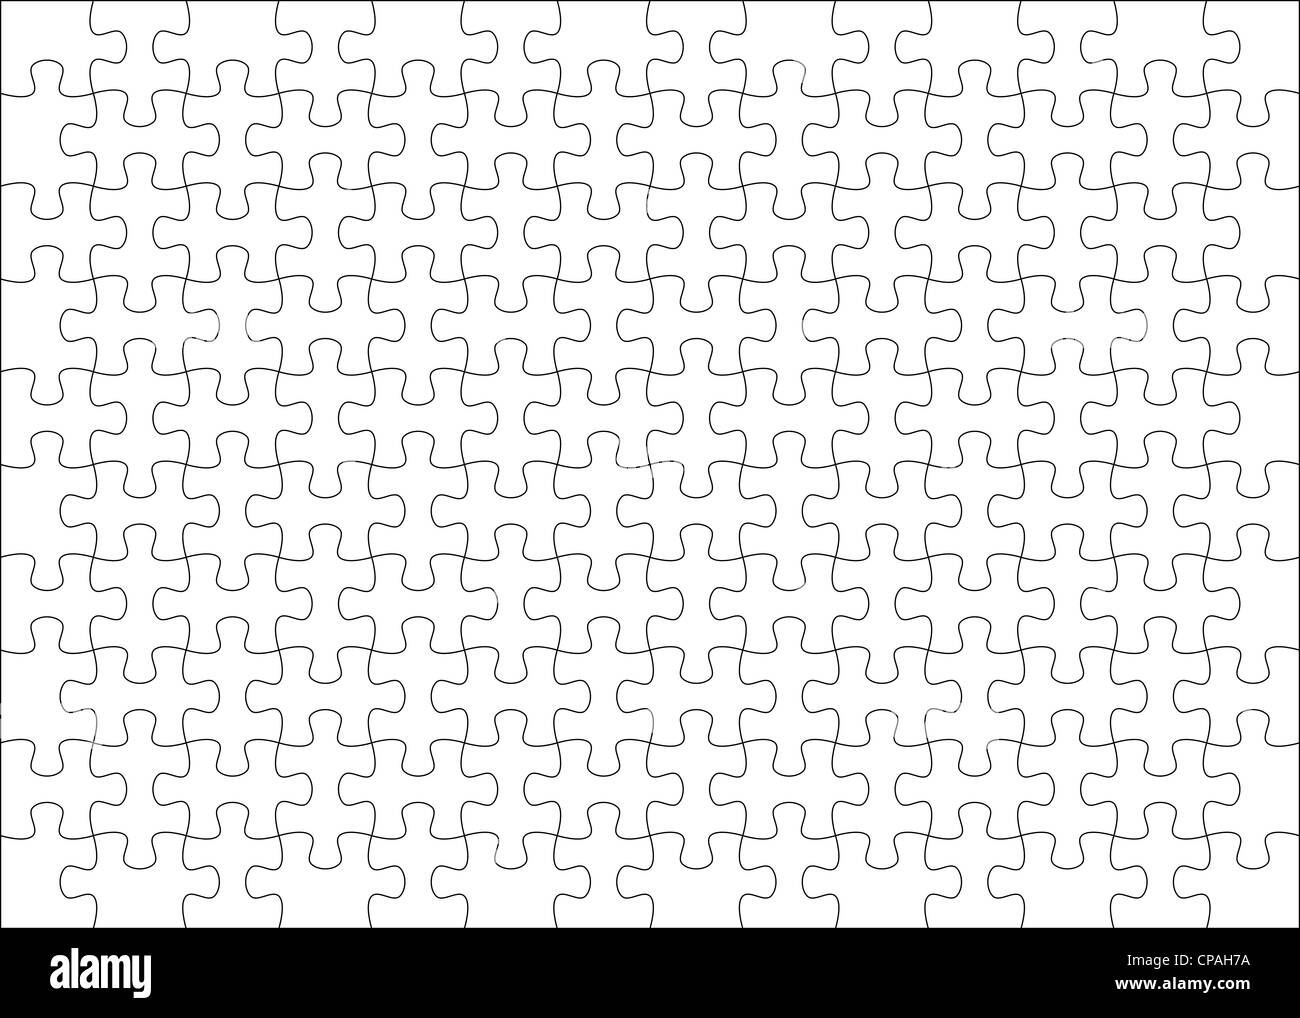 Puzzle-Hintergrund Vorlage 14 x 10 nützlich zur Maskierung Foto und  illustration Stockfotografie - Alamy